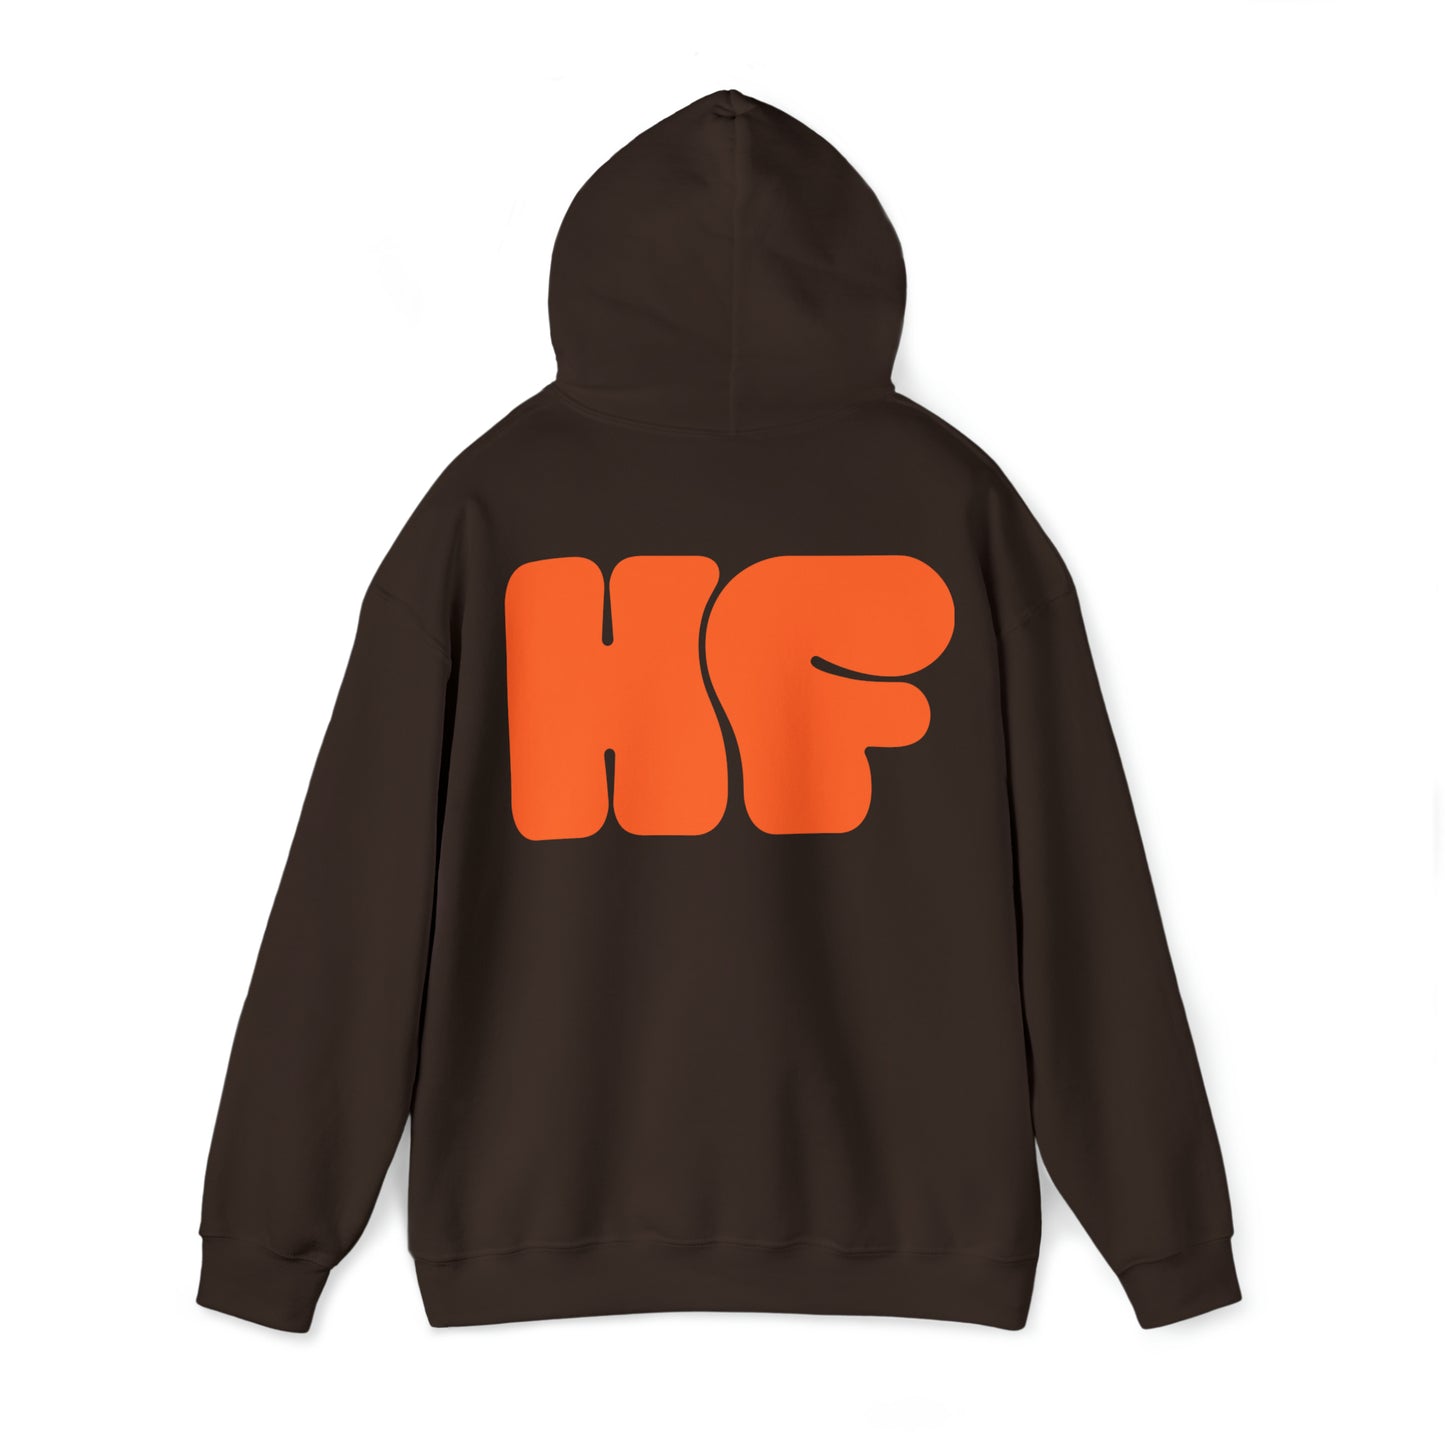 HF Hoodie - Brown